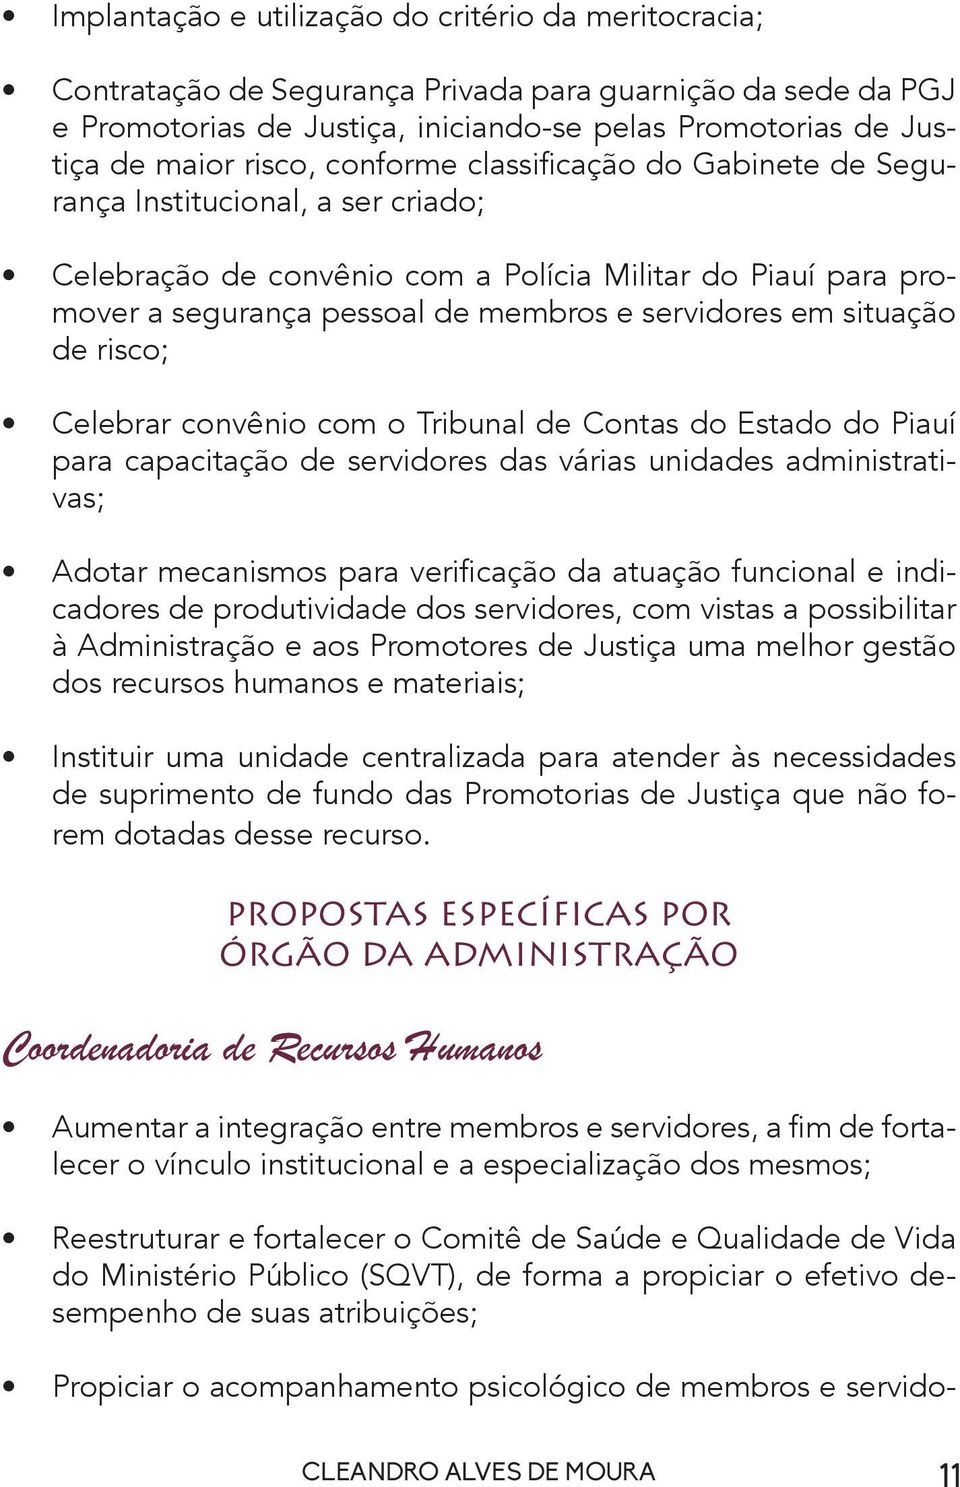 situação de risco; Celebrar convênio com o Tribunal de Contas do Estado do Piauí para capacitação de servidores das várias unidades administrativas; Adotar mecanismos para verificação da atuação